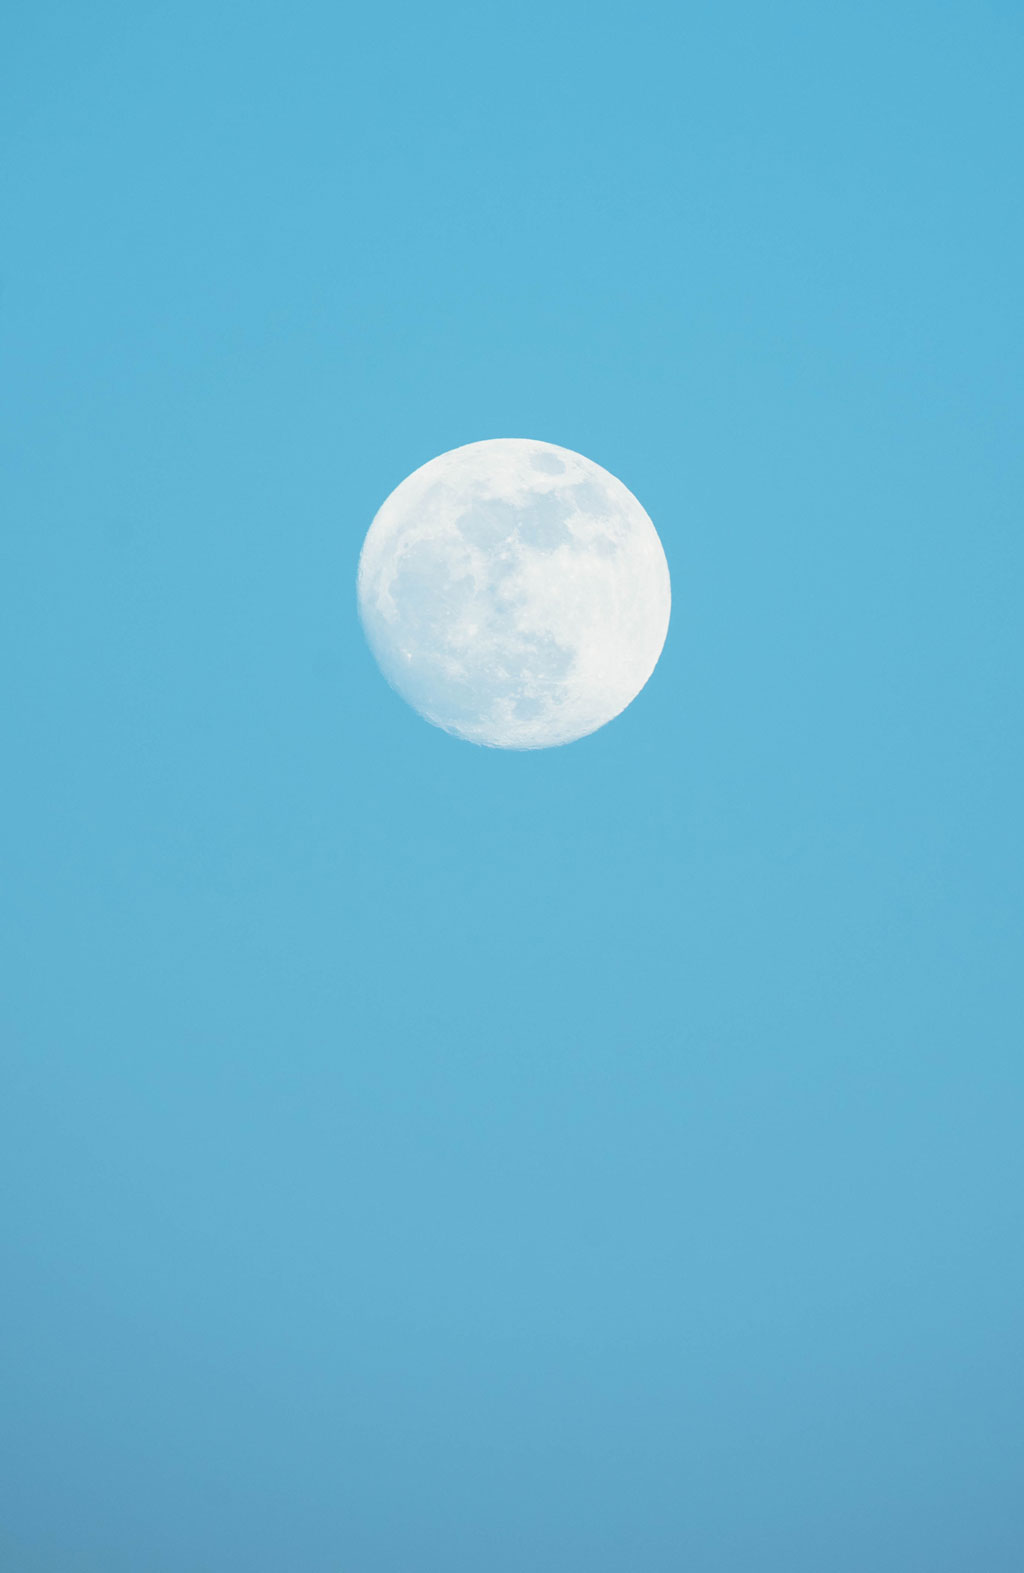 Moon against a blue sky